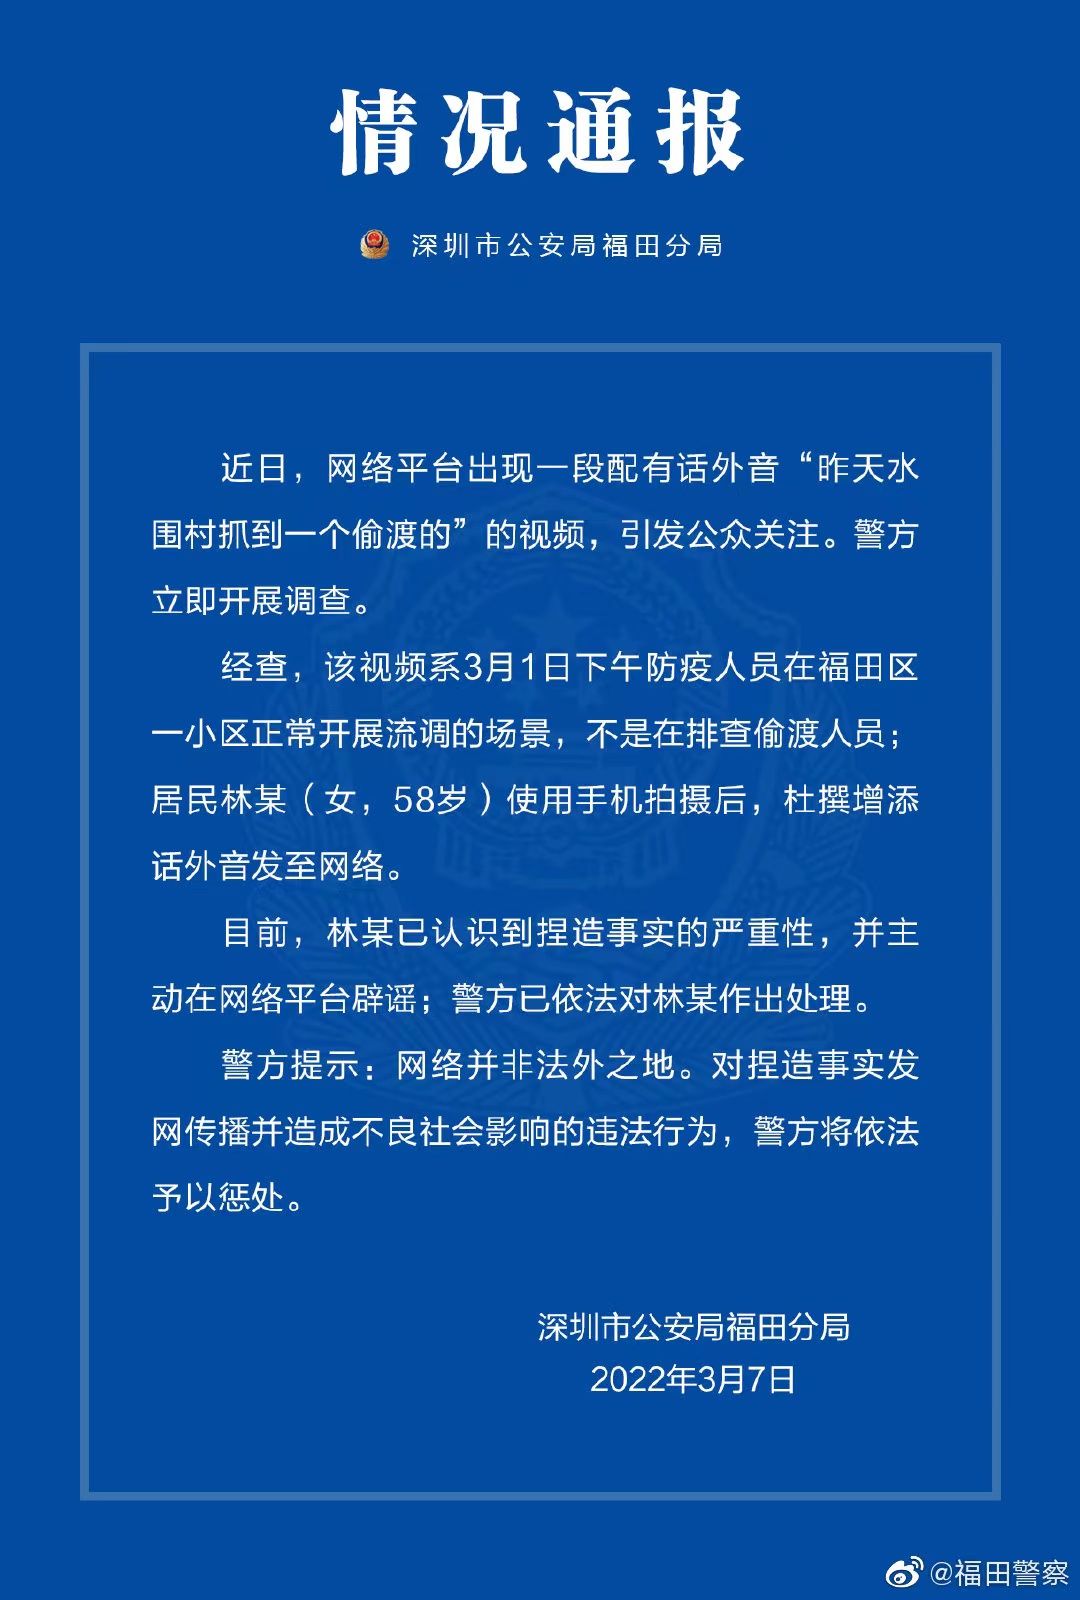 网传“昨天水围村抓到一个偷渡的”，深圳警方辟谣